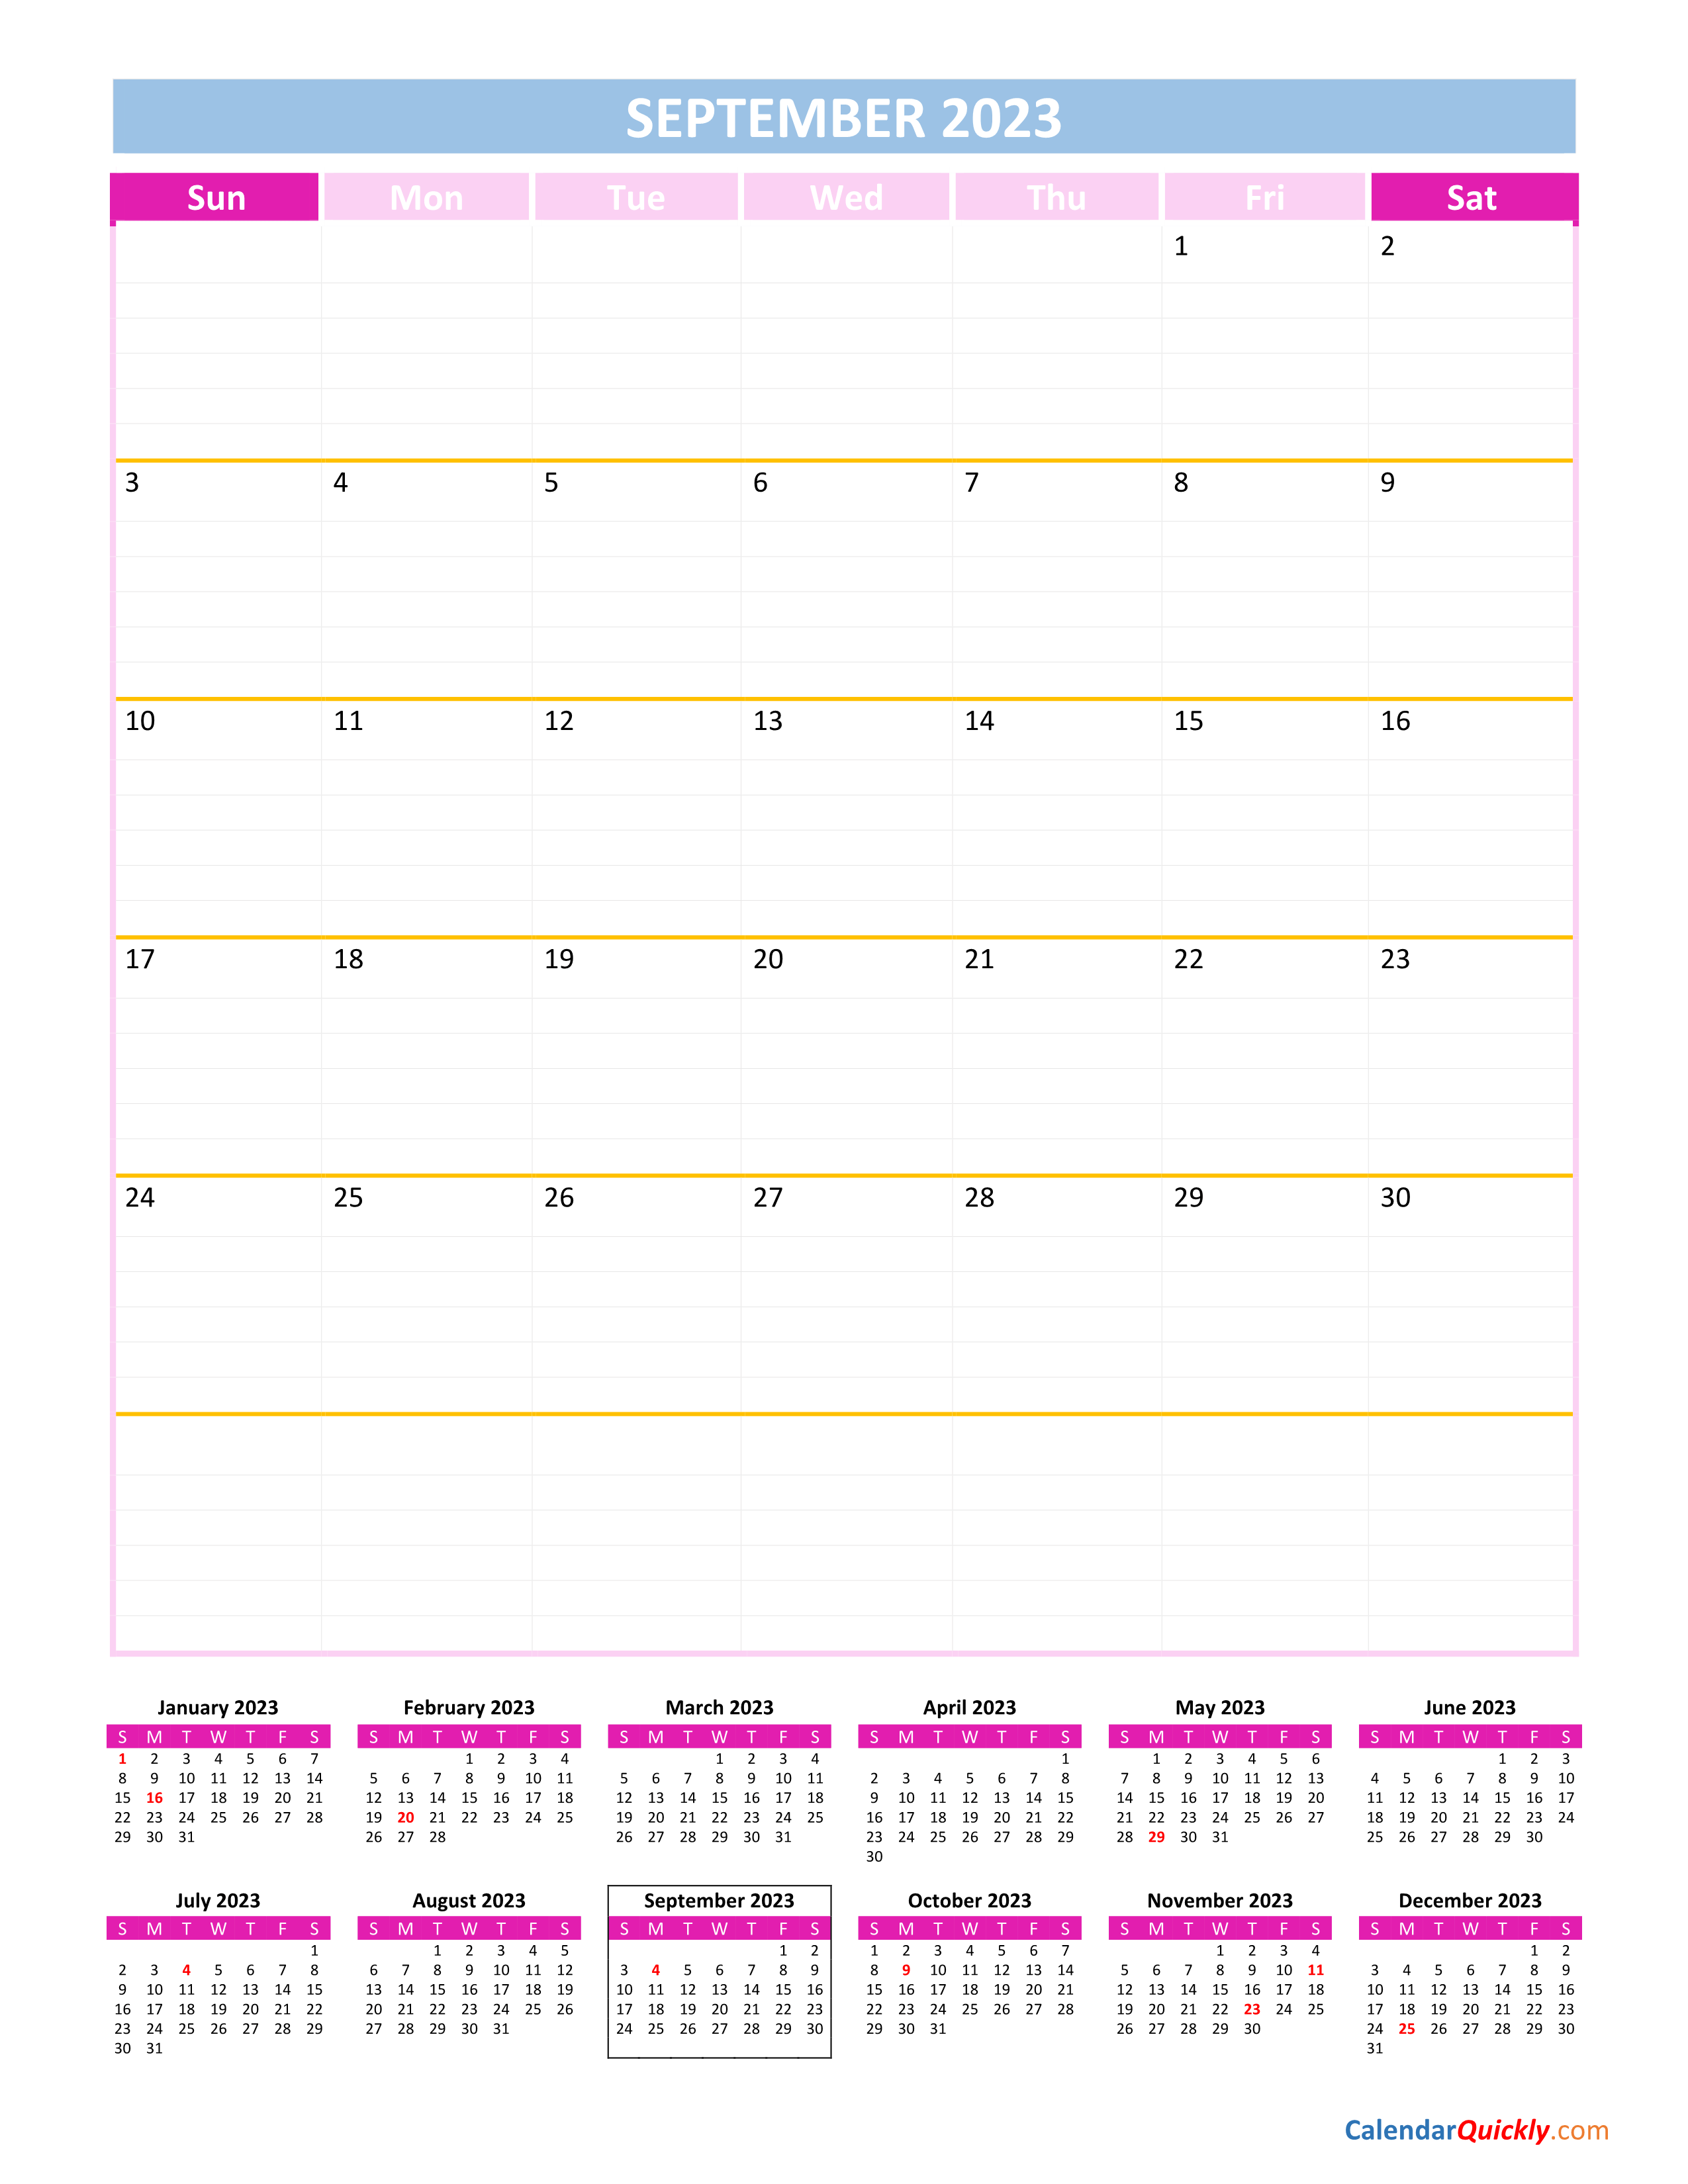 calendar-2023-september-2023-get-calendar-2023-update